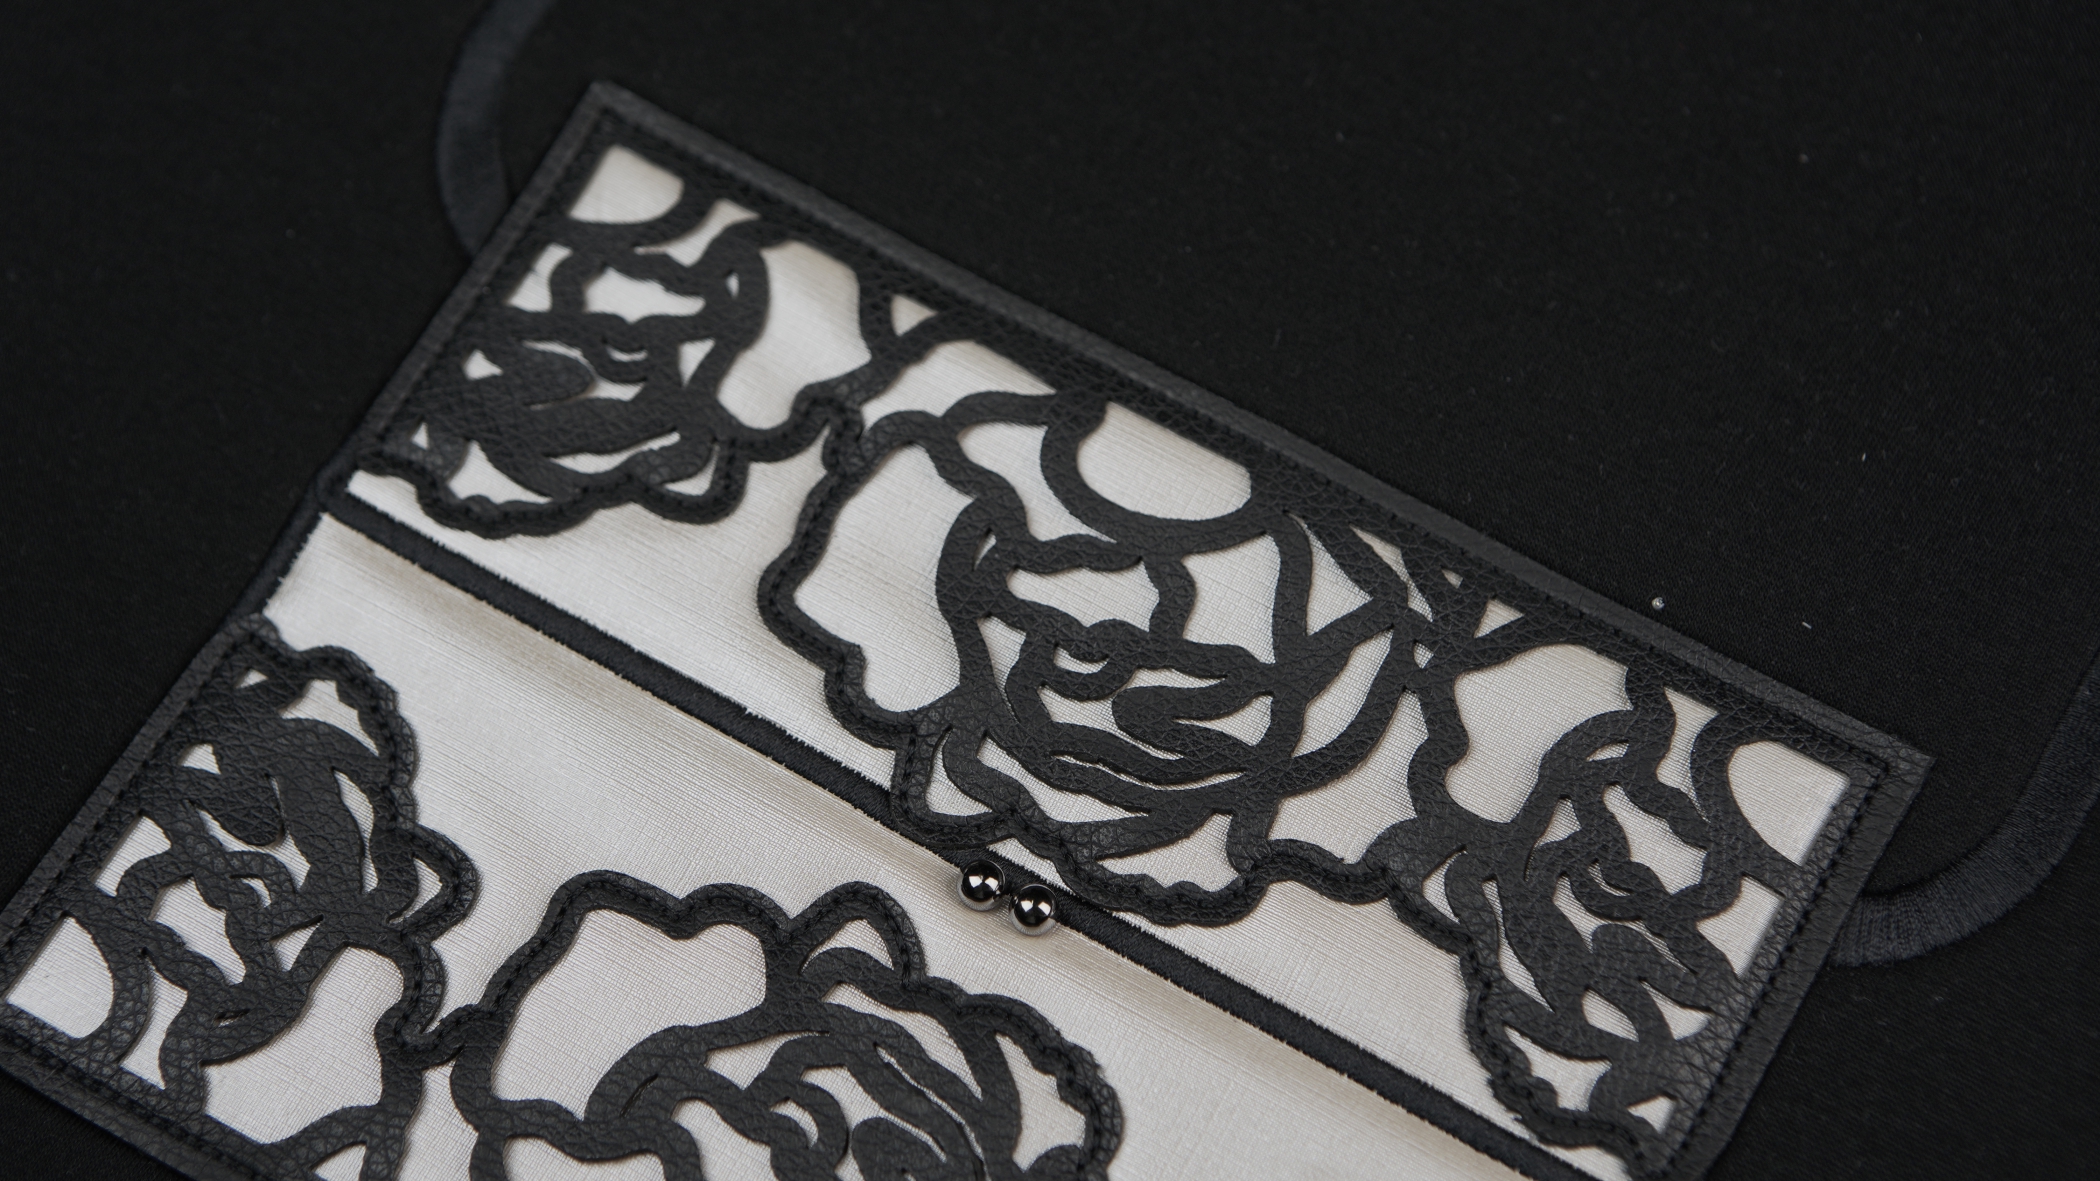 Bordados com aplicação em preto sobre fundo branco que formam uma espécie de desenho semelhante a uma rosa